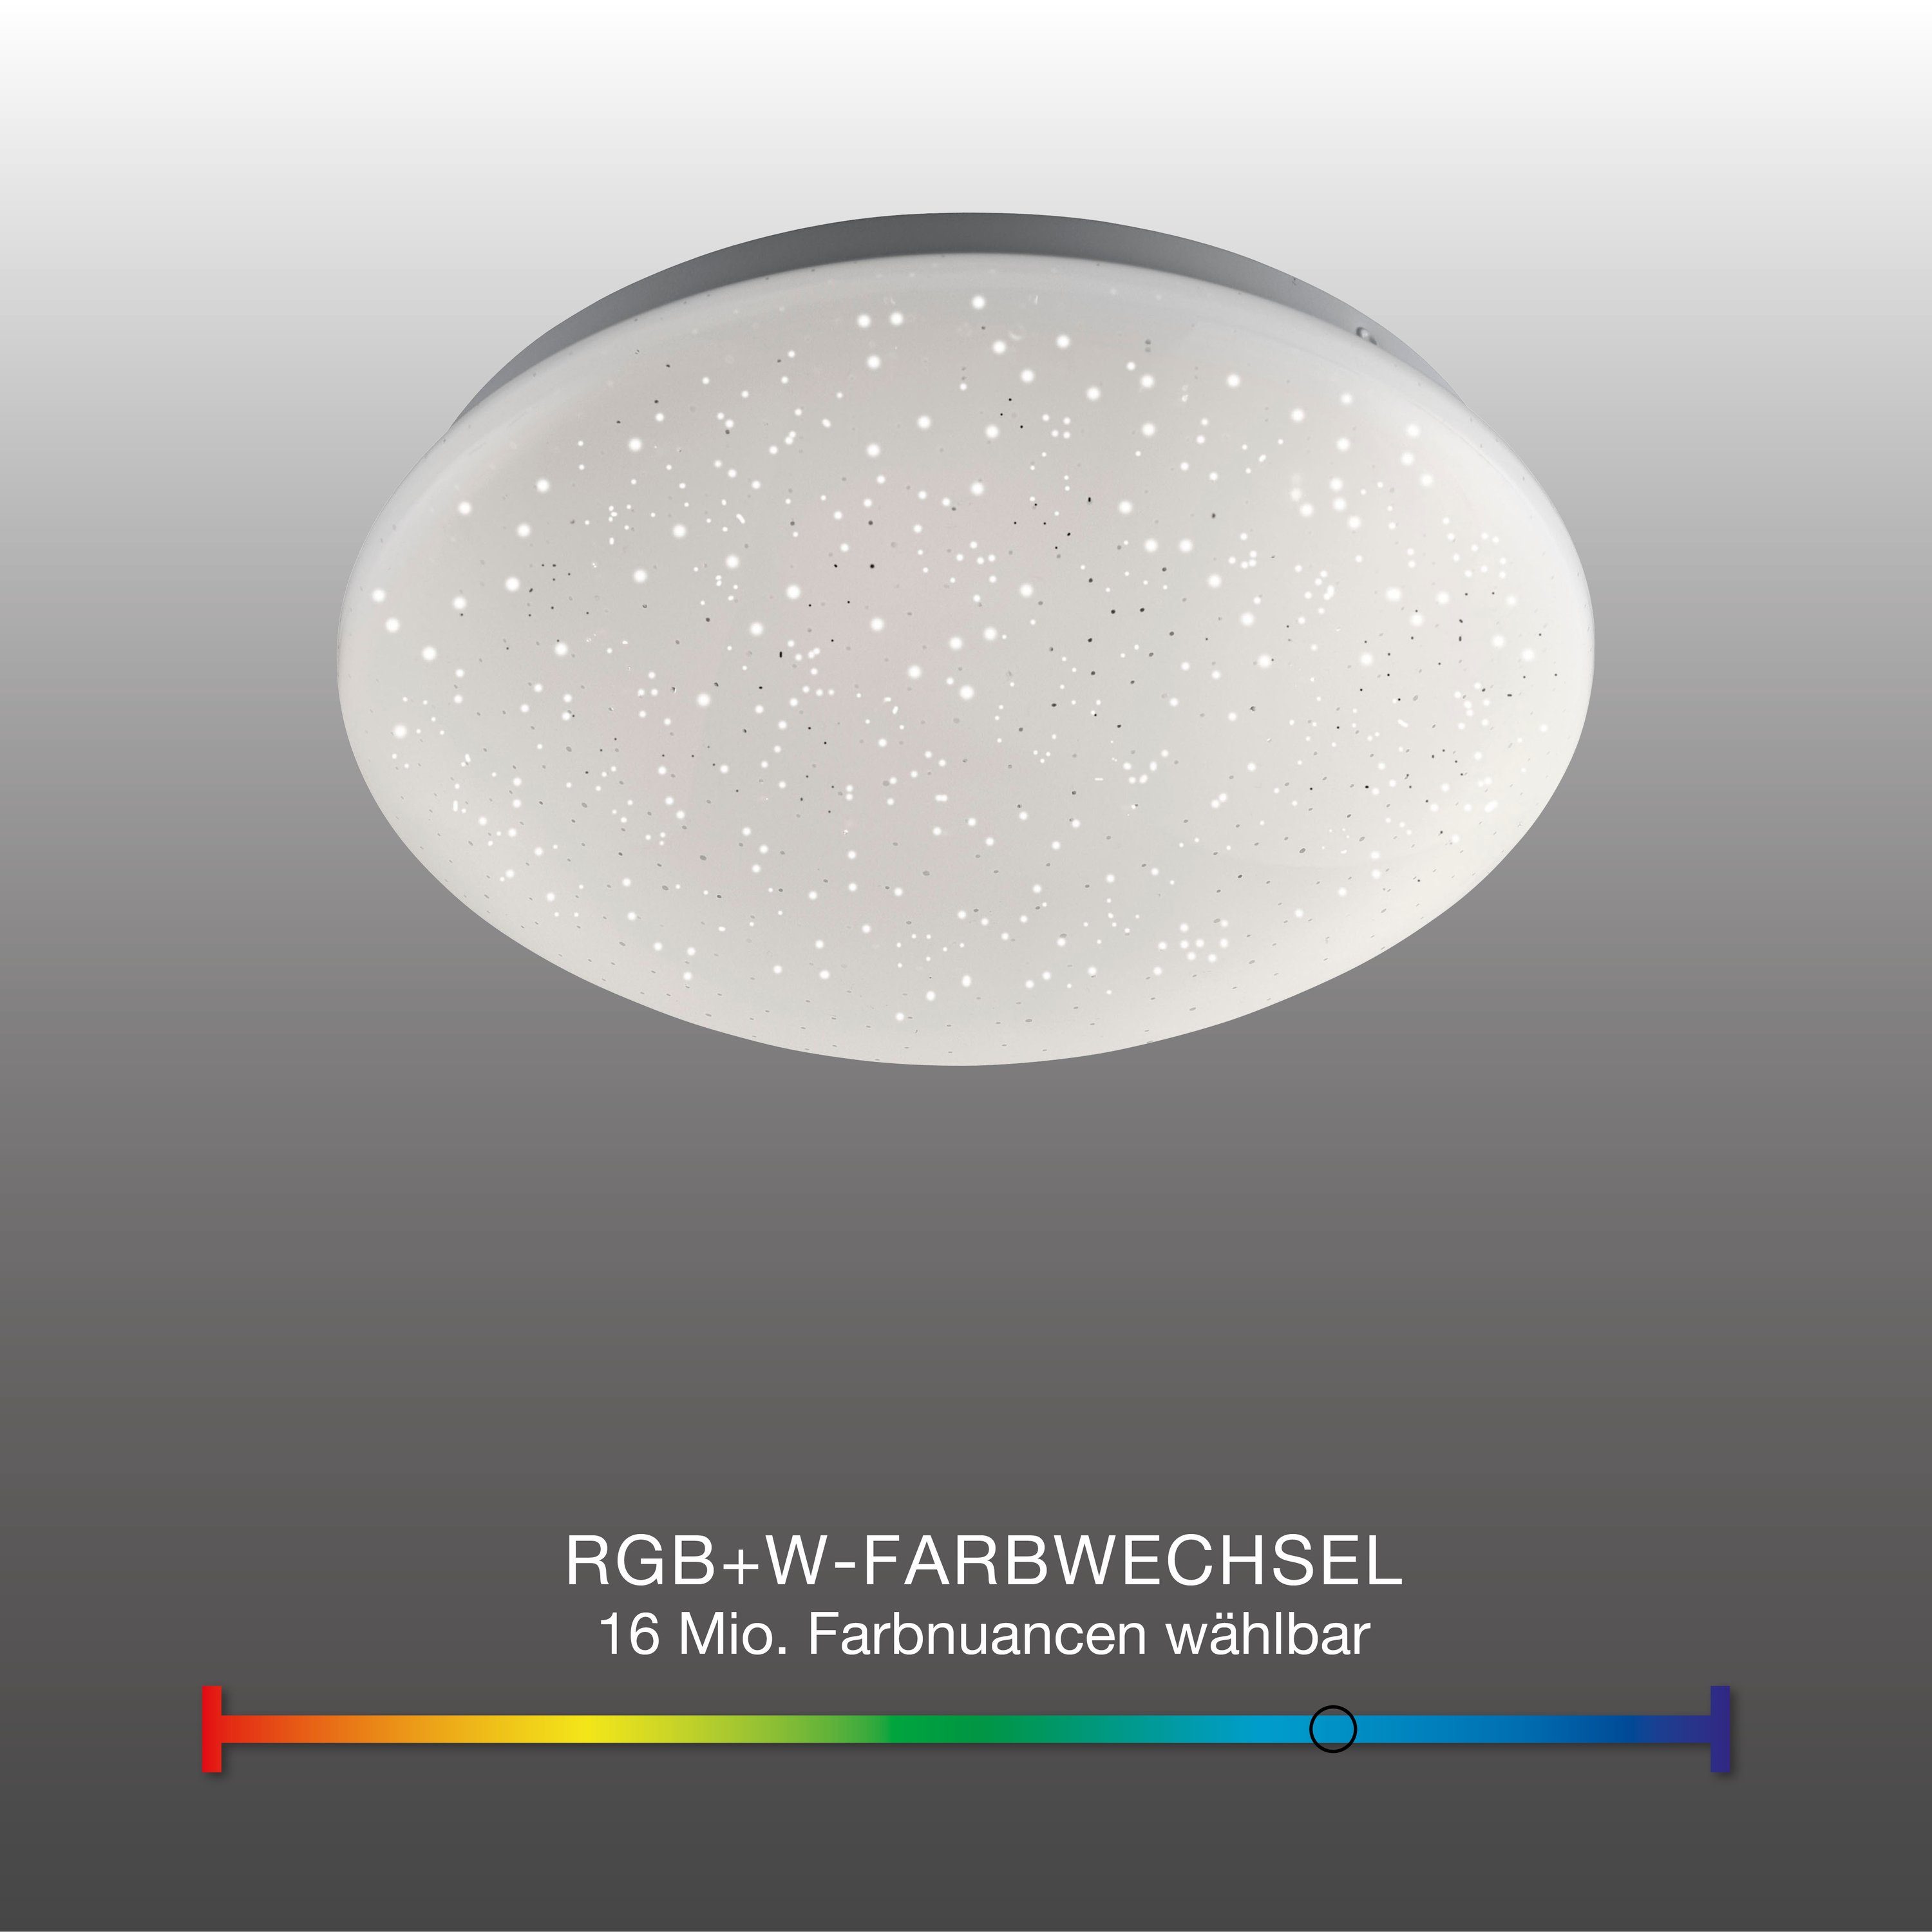 SellTec LED Deckenleuchte LED warmweiss, RGB-Farbwechsel, / dimmbar, Deckenlampe über 1xLED-Board Fernbedienung, RGB Watt, Farbwechsel Kinderzimmer dimmbar Sternenhimmel, 5,60 Farbwechsel, Fernbedienung